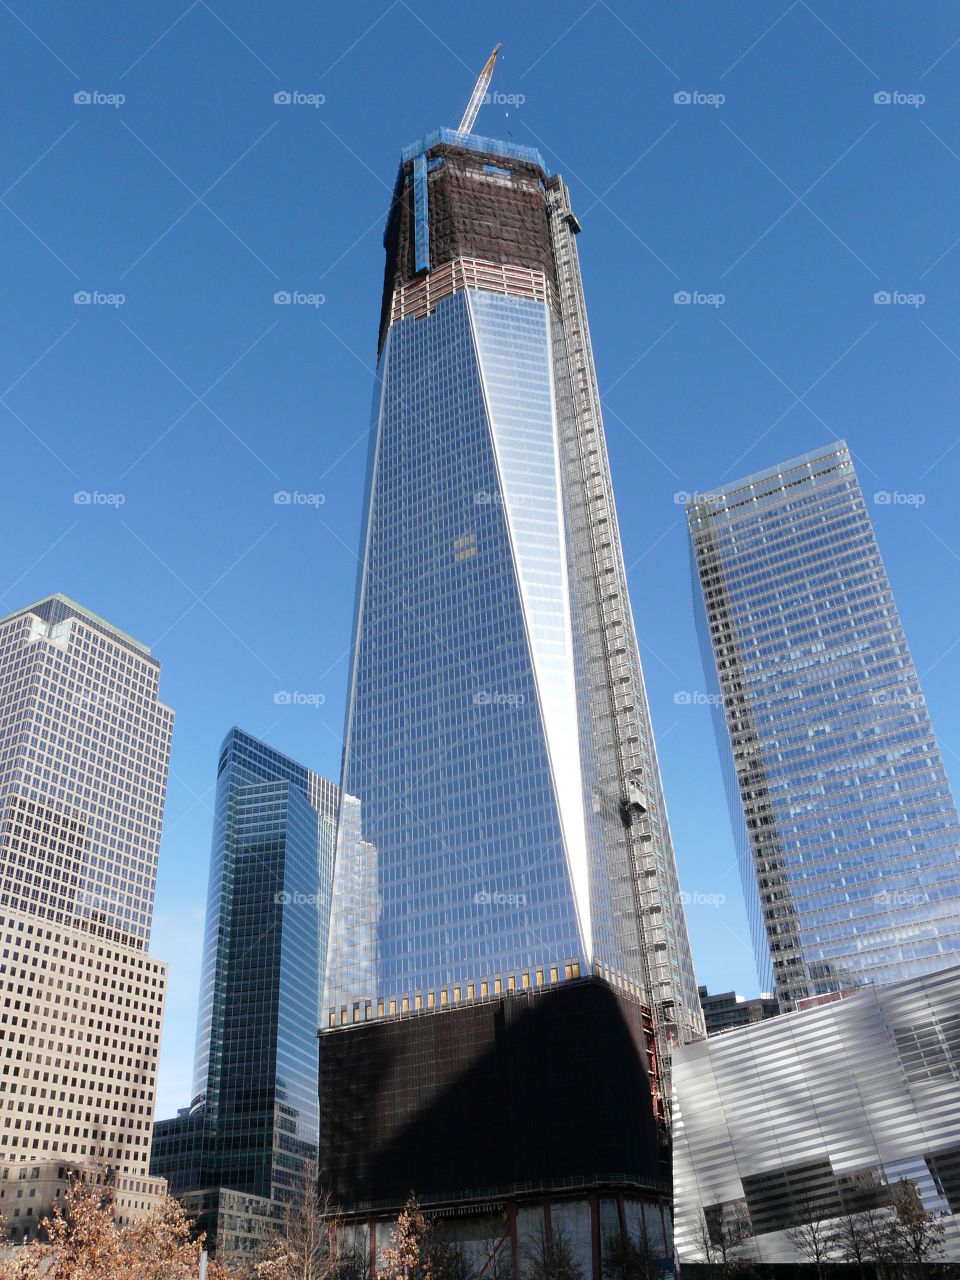 Trade Center Construction 